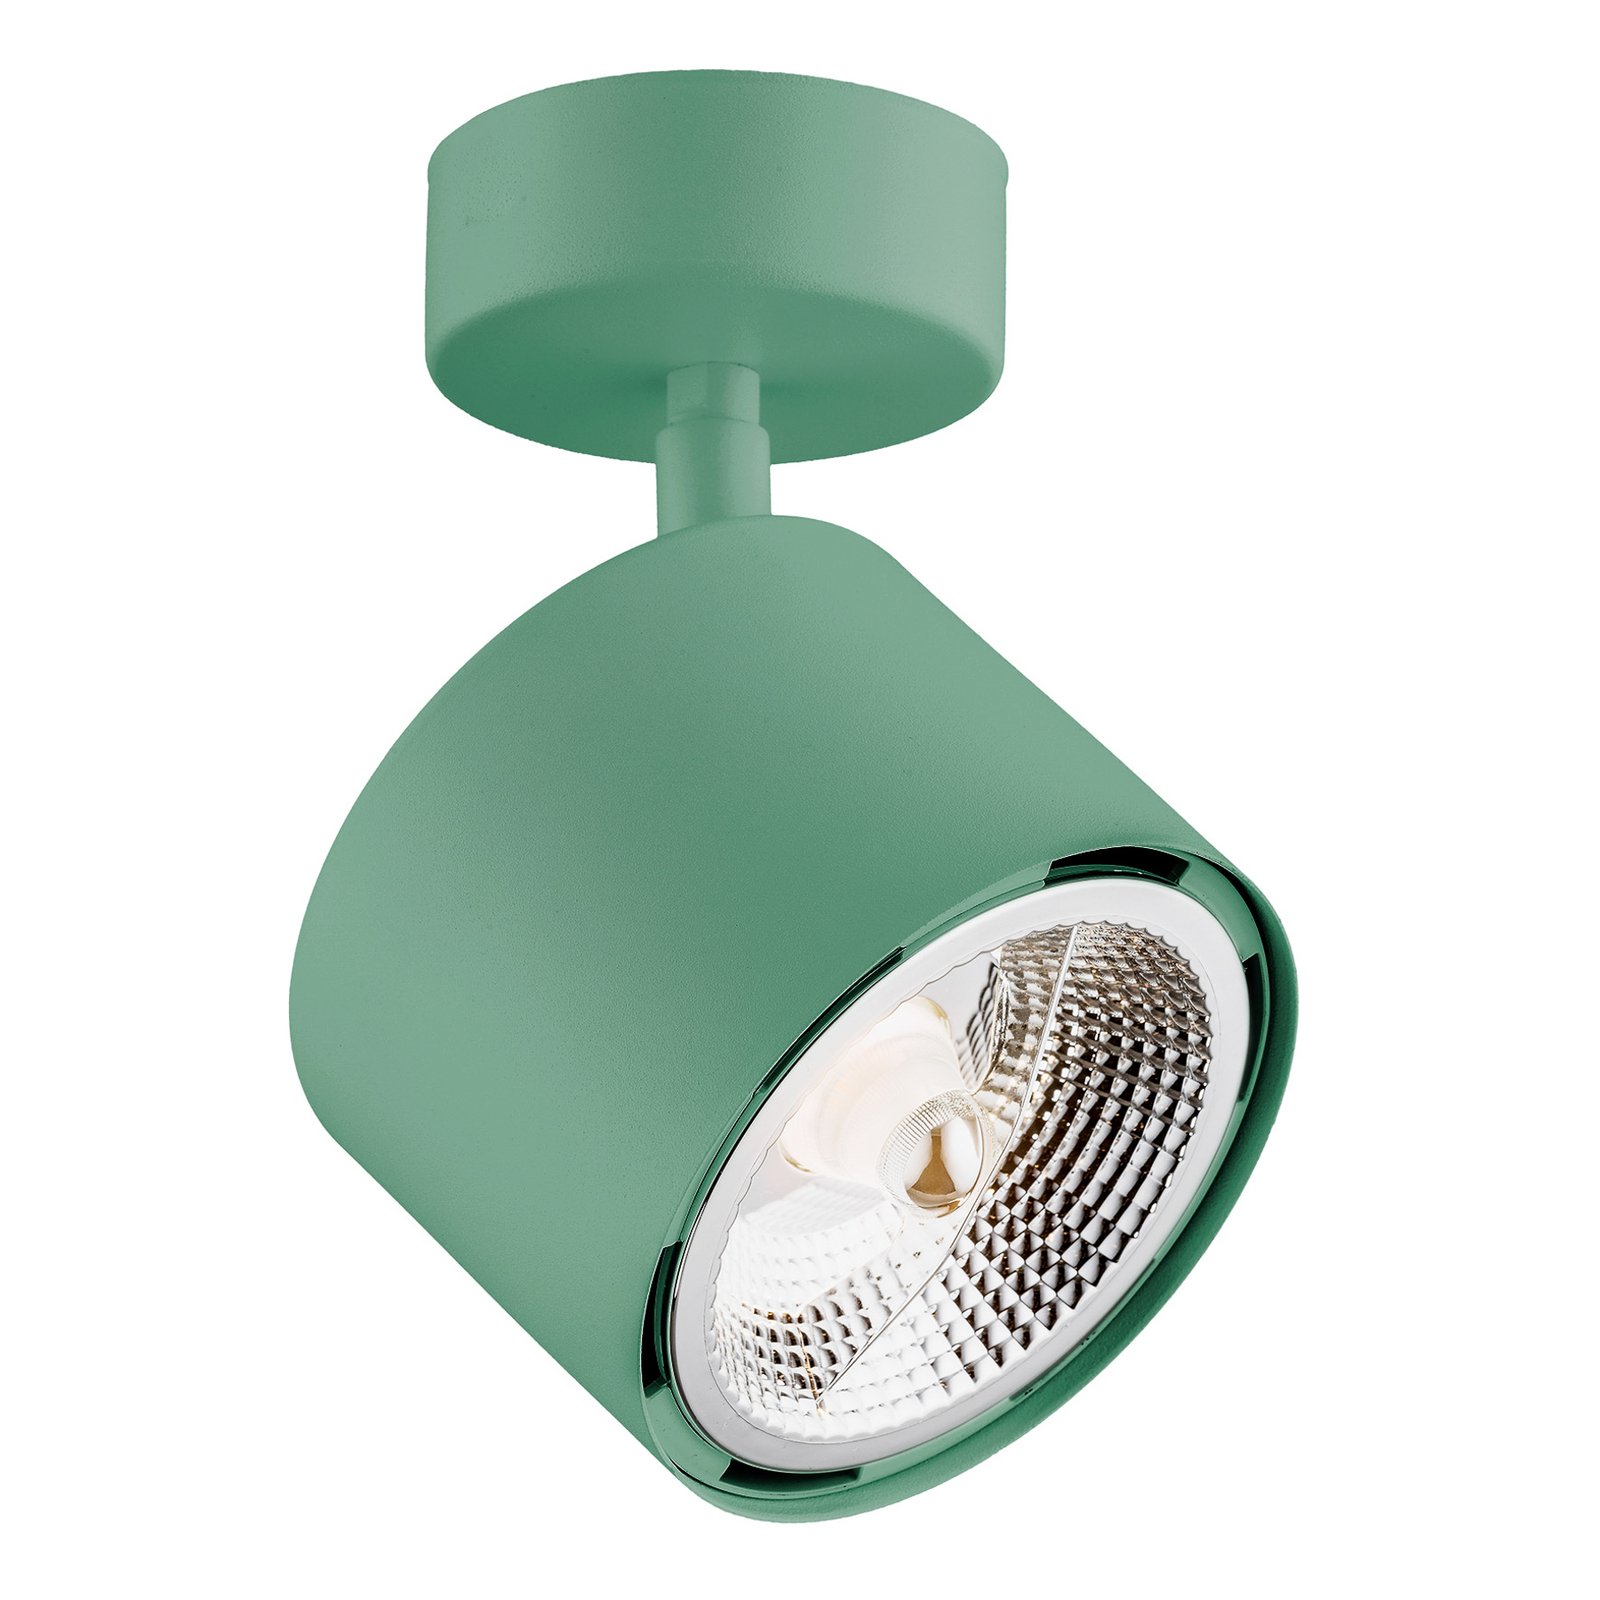 Chloe downlight adjustable 1-bulb, green